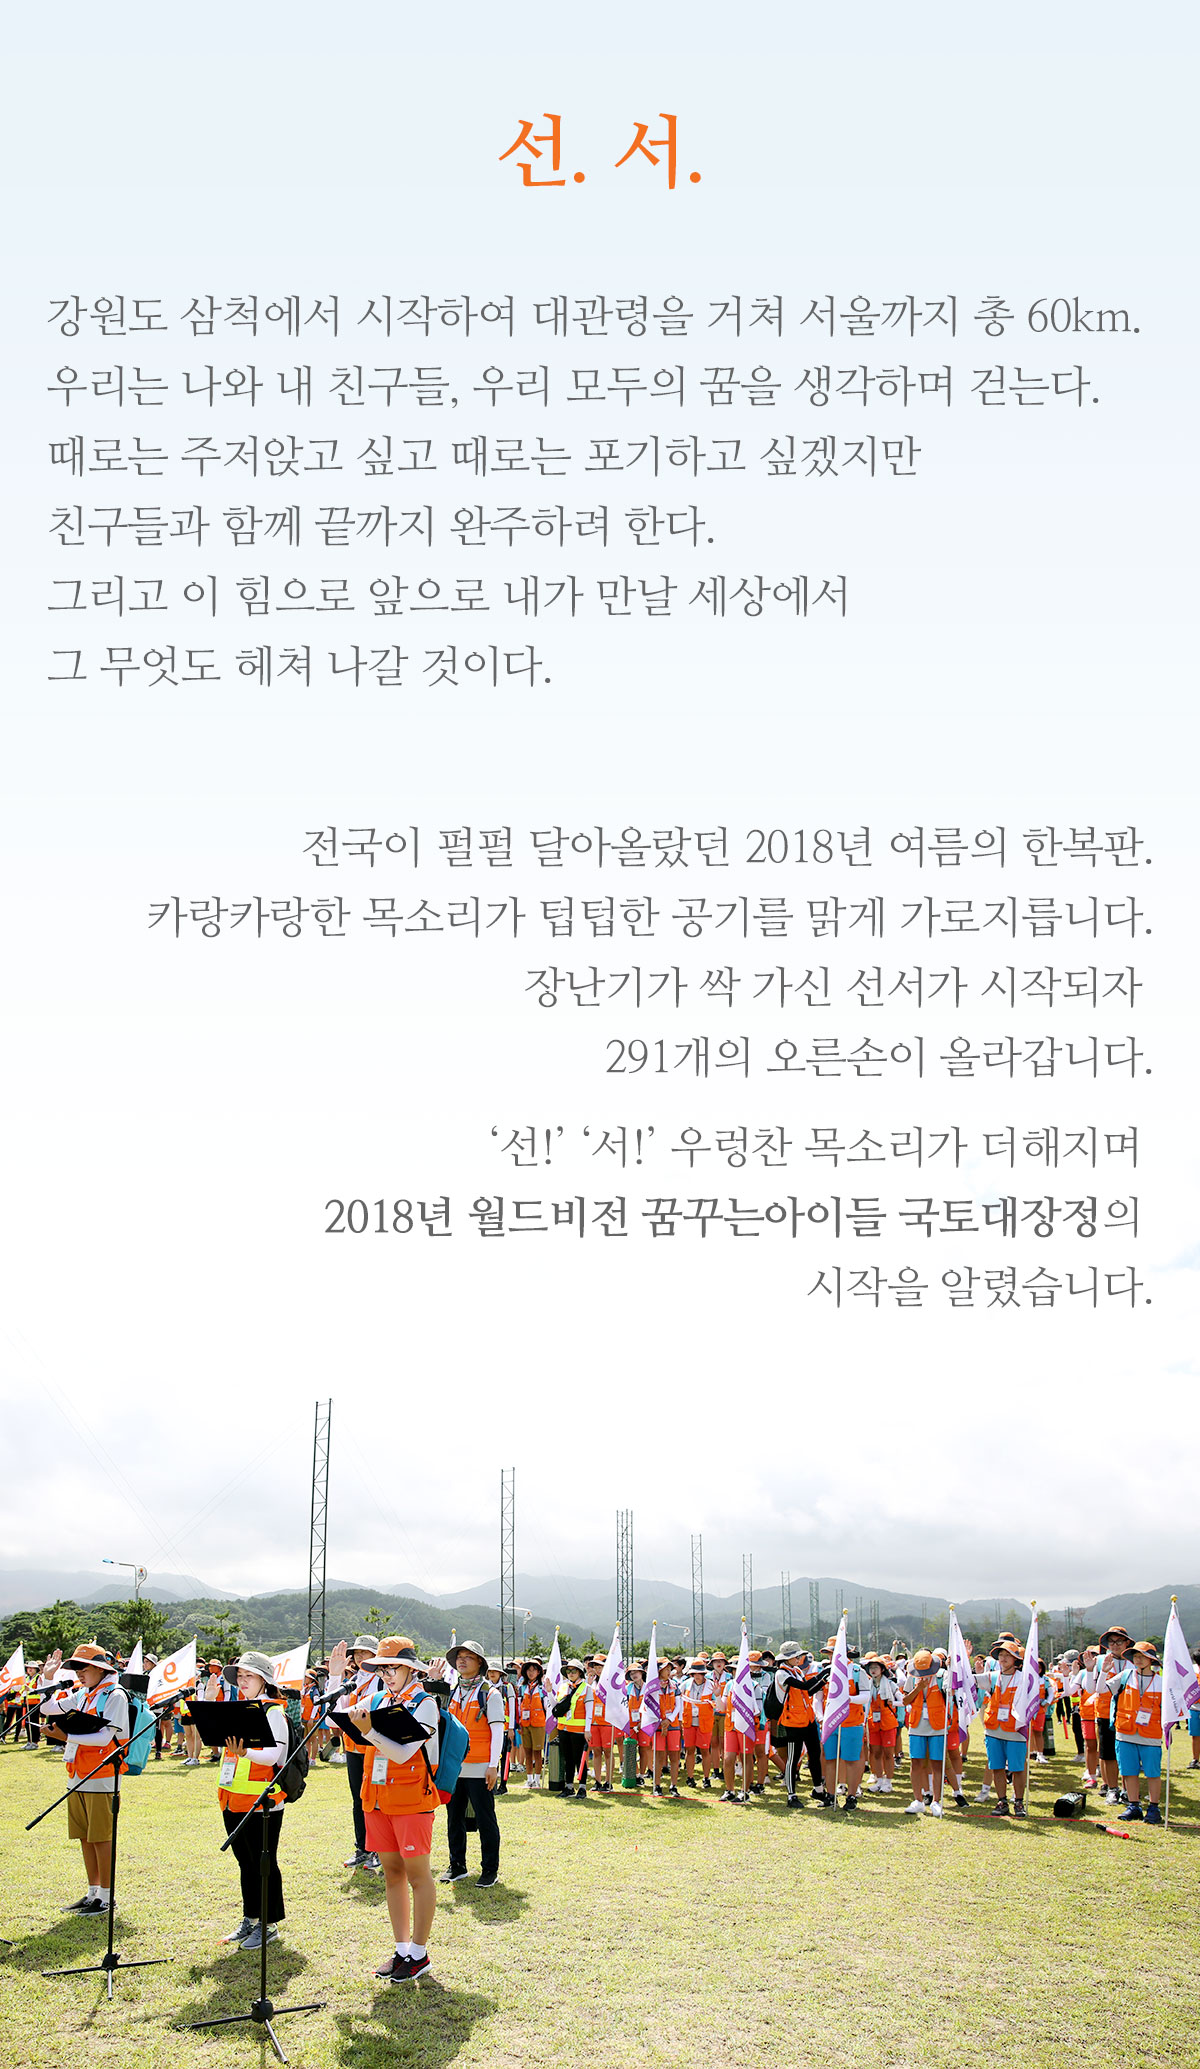 2018년 7월 30일 월드비전 꿈꾸는아이들 국토대장정 선서자 대표 김기호, 황정민, 김혜진(왼쪽부터)